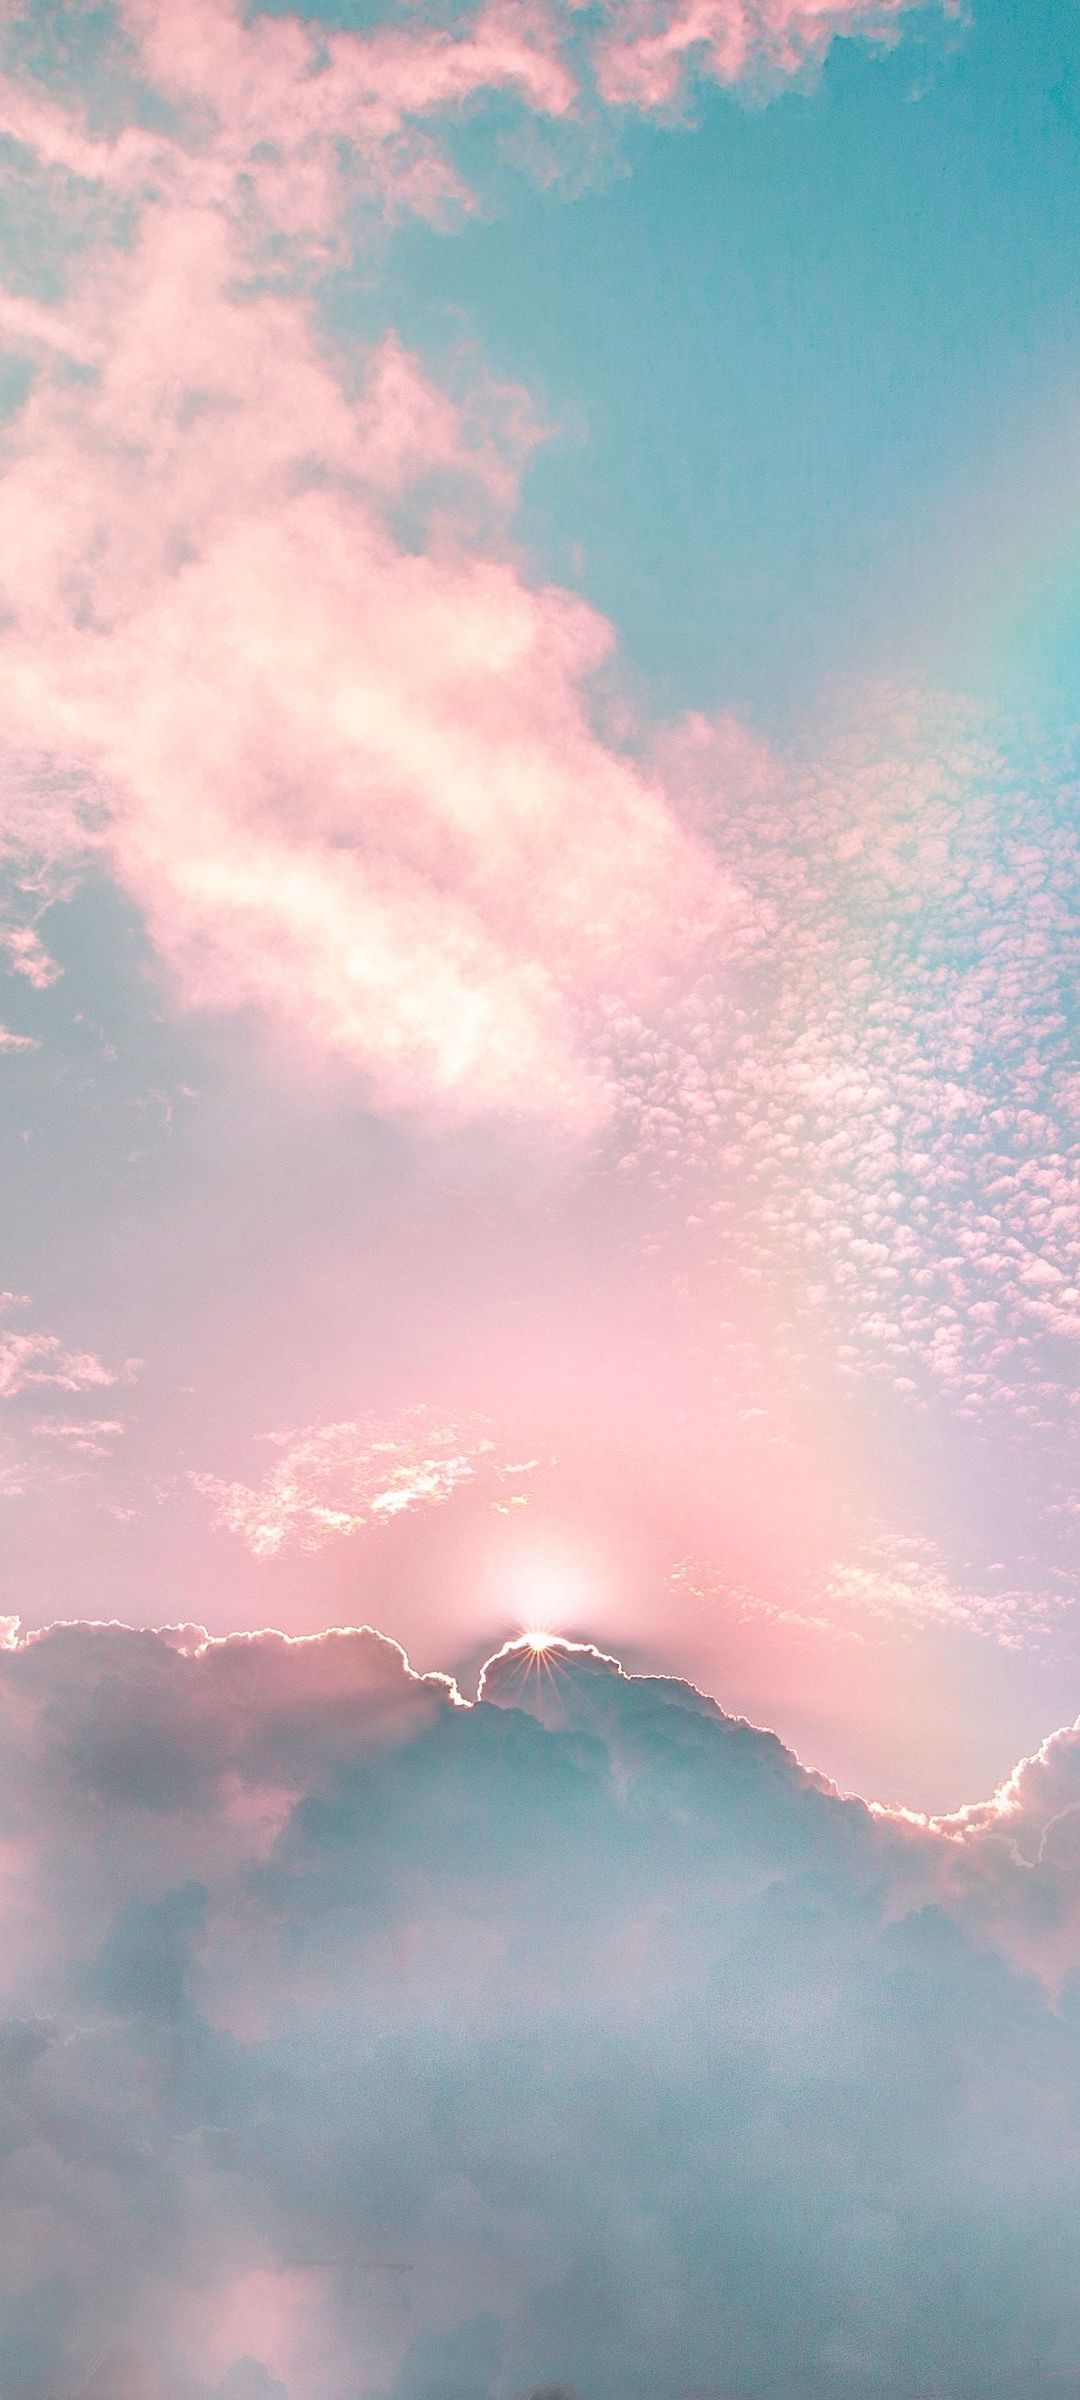 綺麗な空 虹 雲 Redmi Note 9s Androidスマホ壁紙 待ち受け スマラン